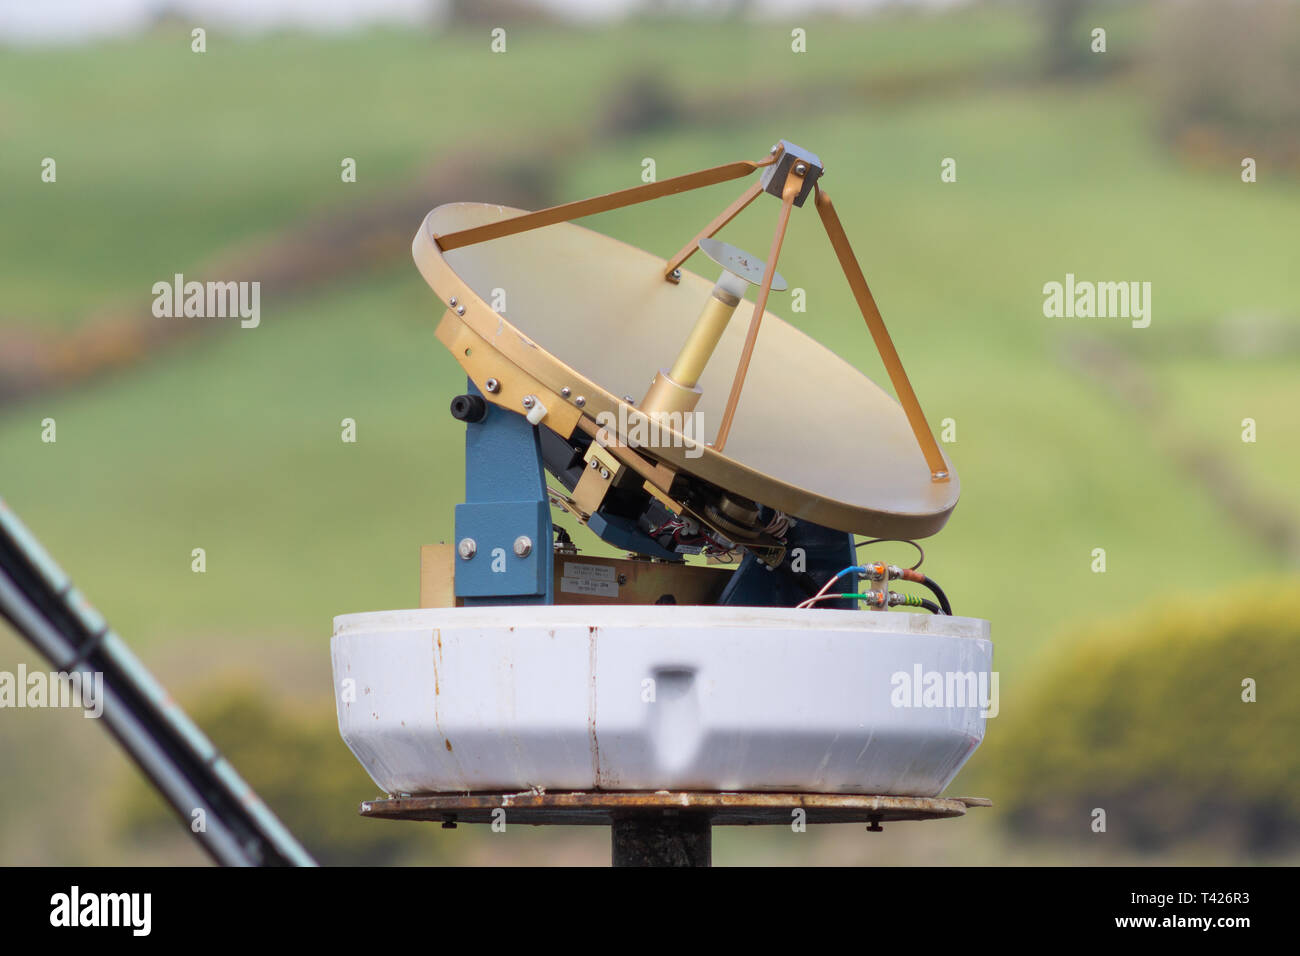 La antena de radar marinos con cubierta quitada Foto de stock